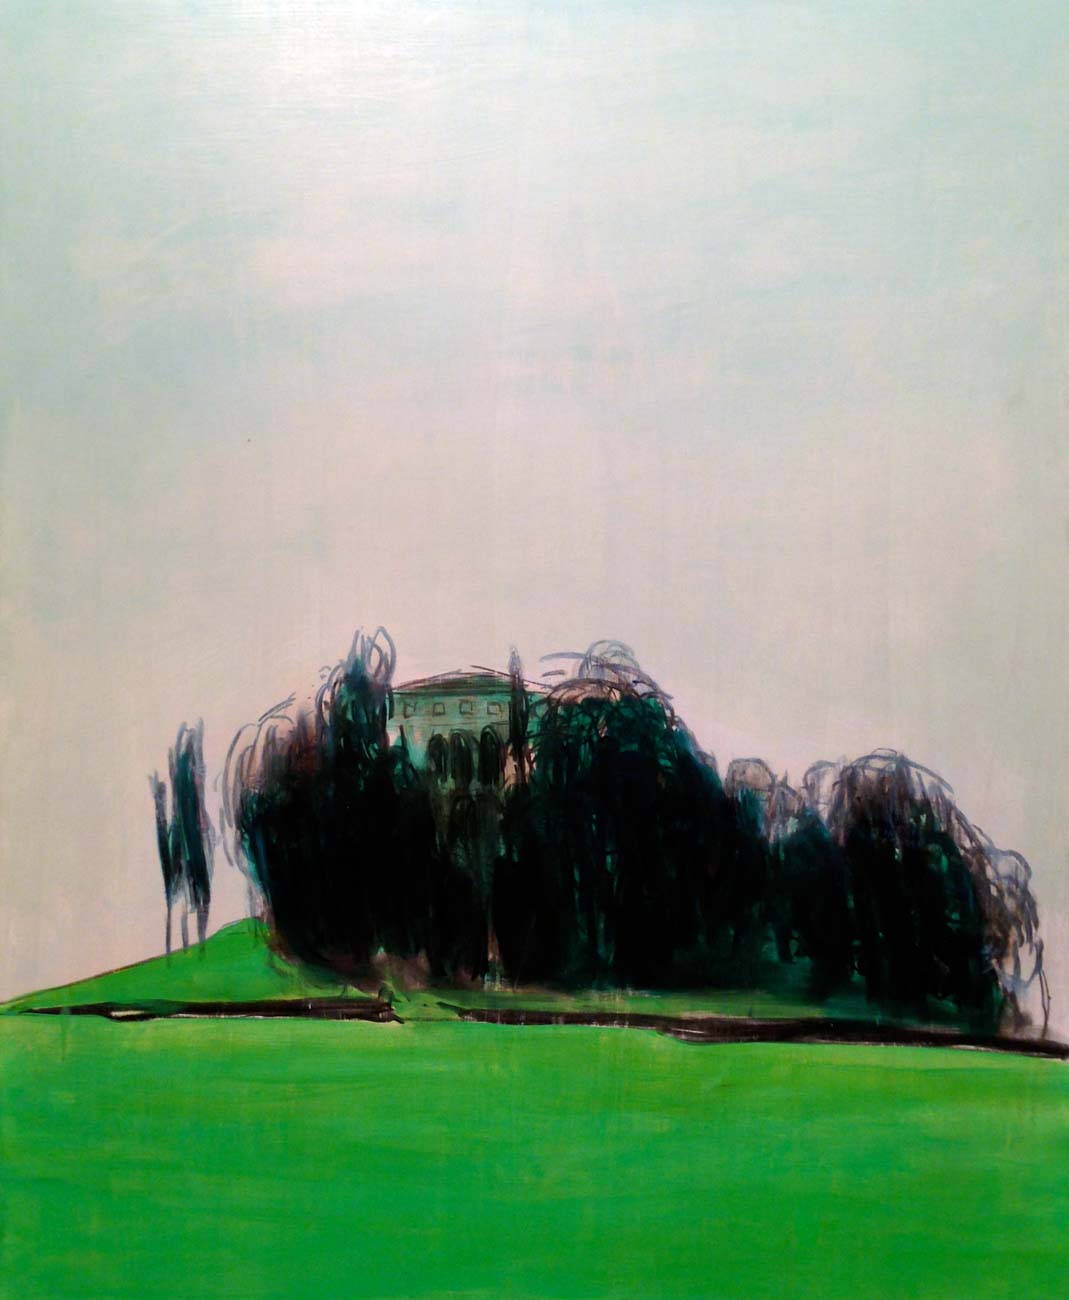 Chiara Lera - Absolute green, 100 x 80 cm, olio e combustione su tavola, 2013